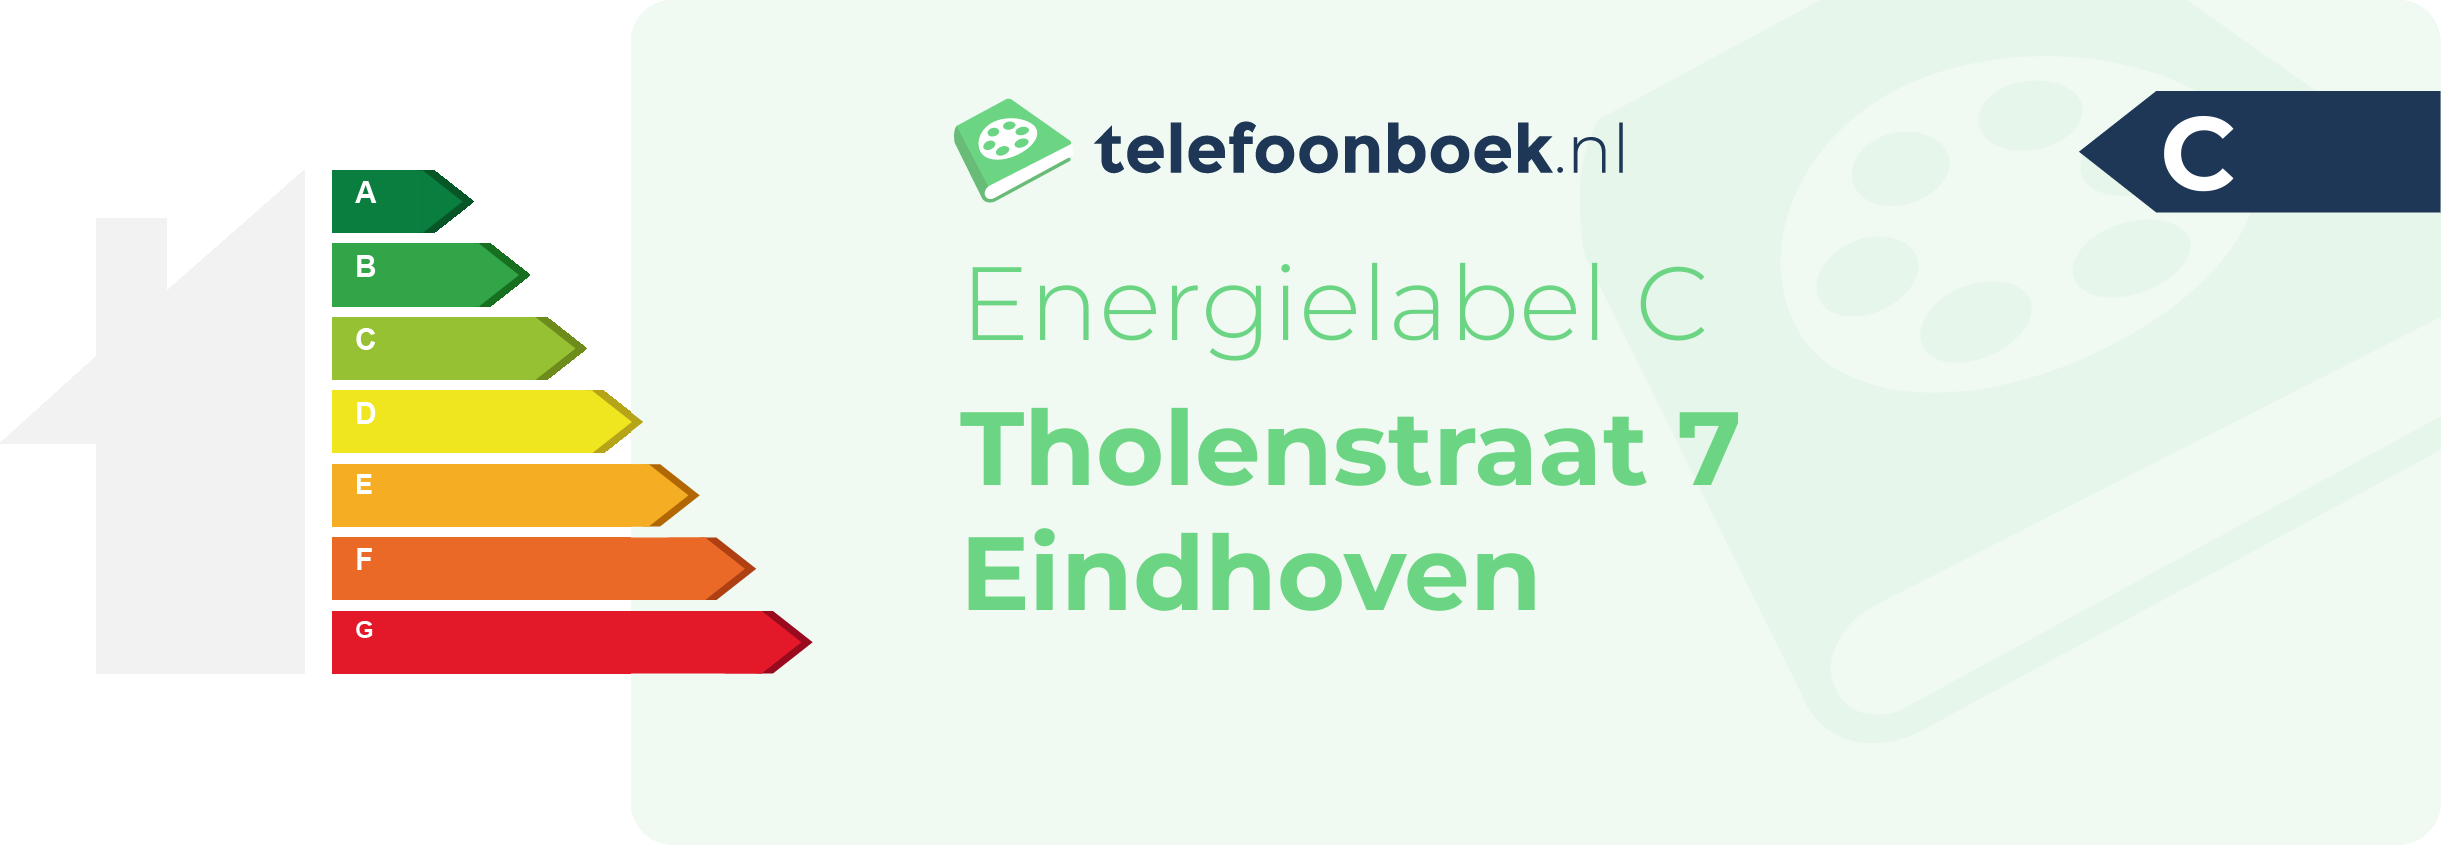 Energielabel Tholenstraat 7 Eindhoven